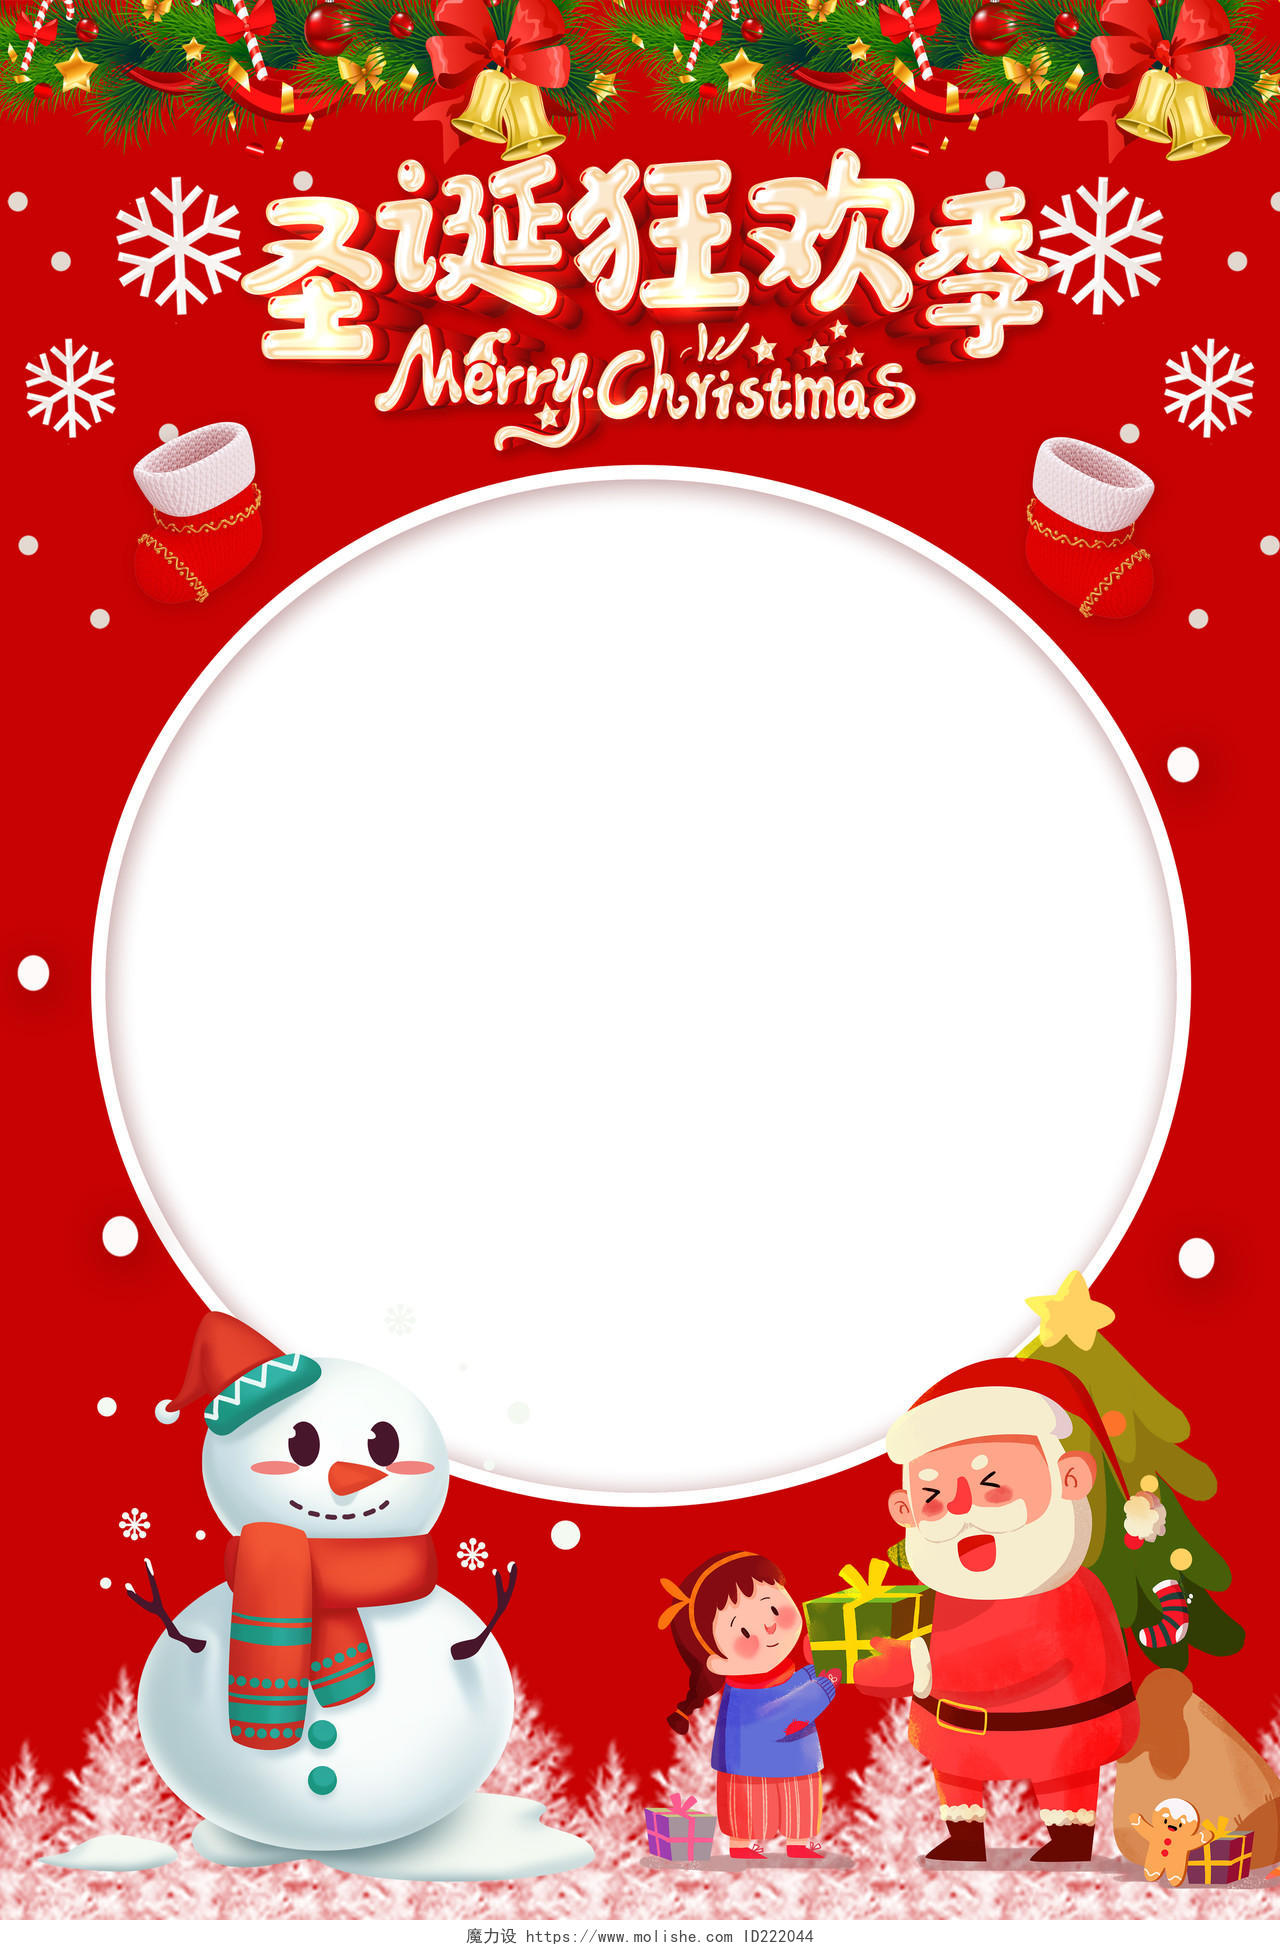 红色卡通圣诞节拍照框kt板海报设计圣诞节圣诞拍照框